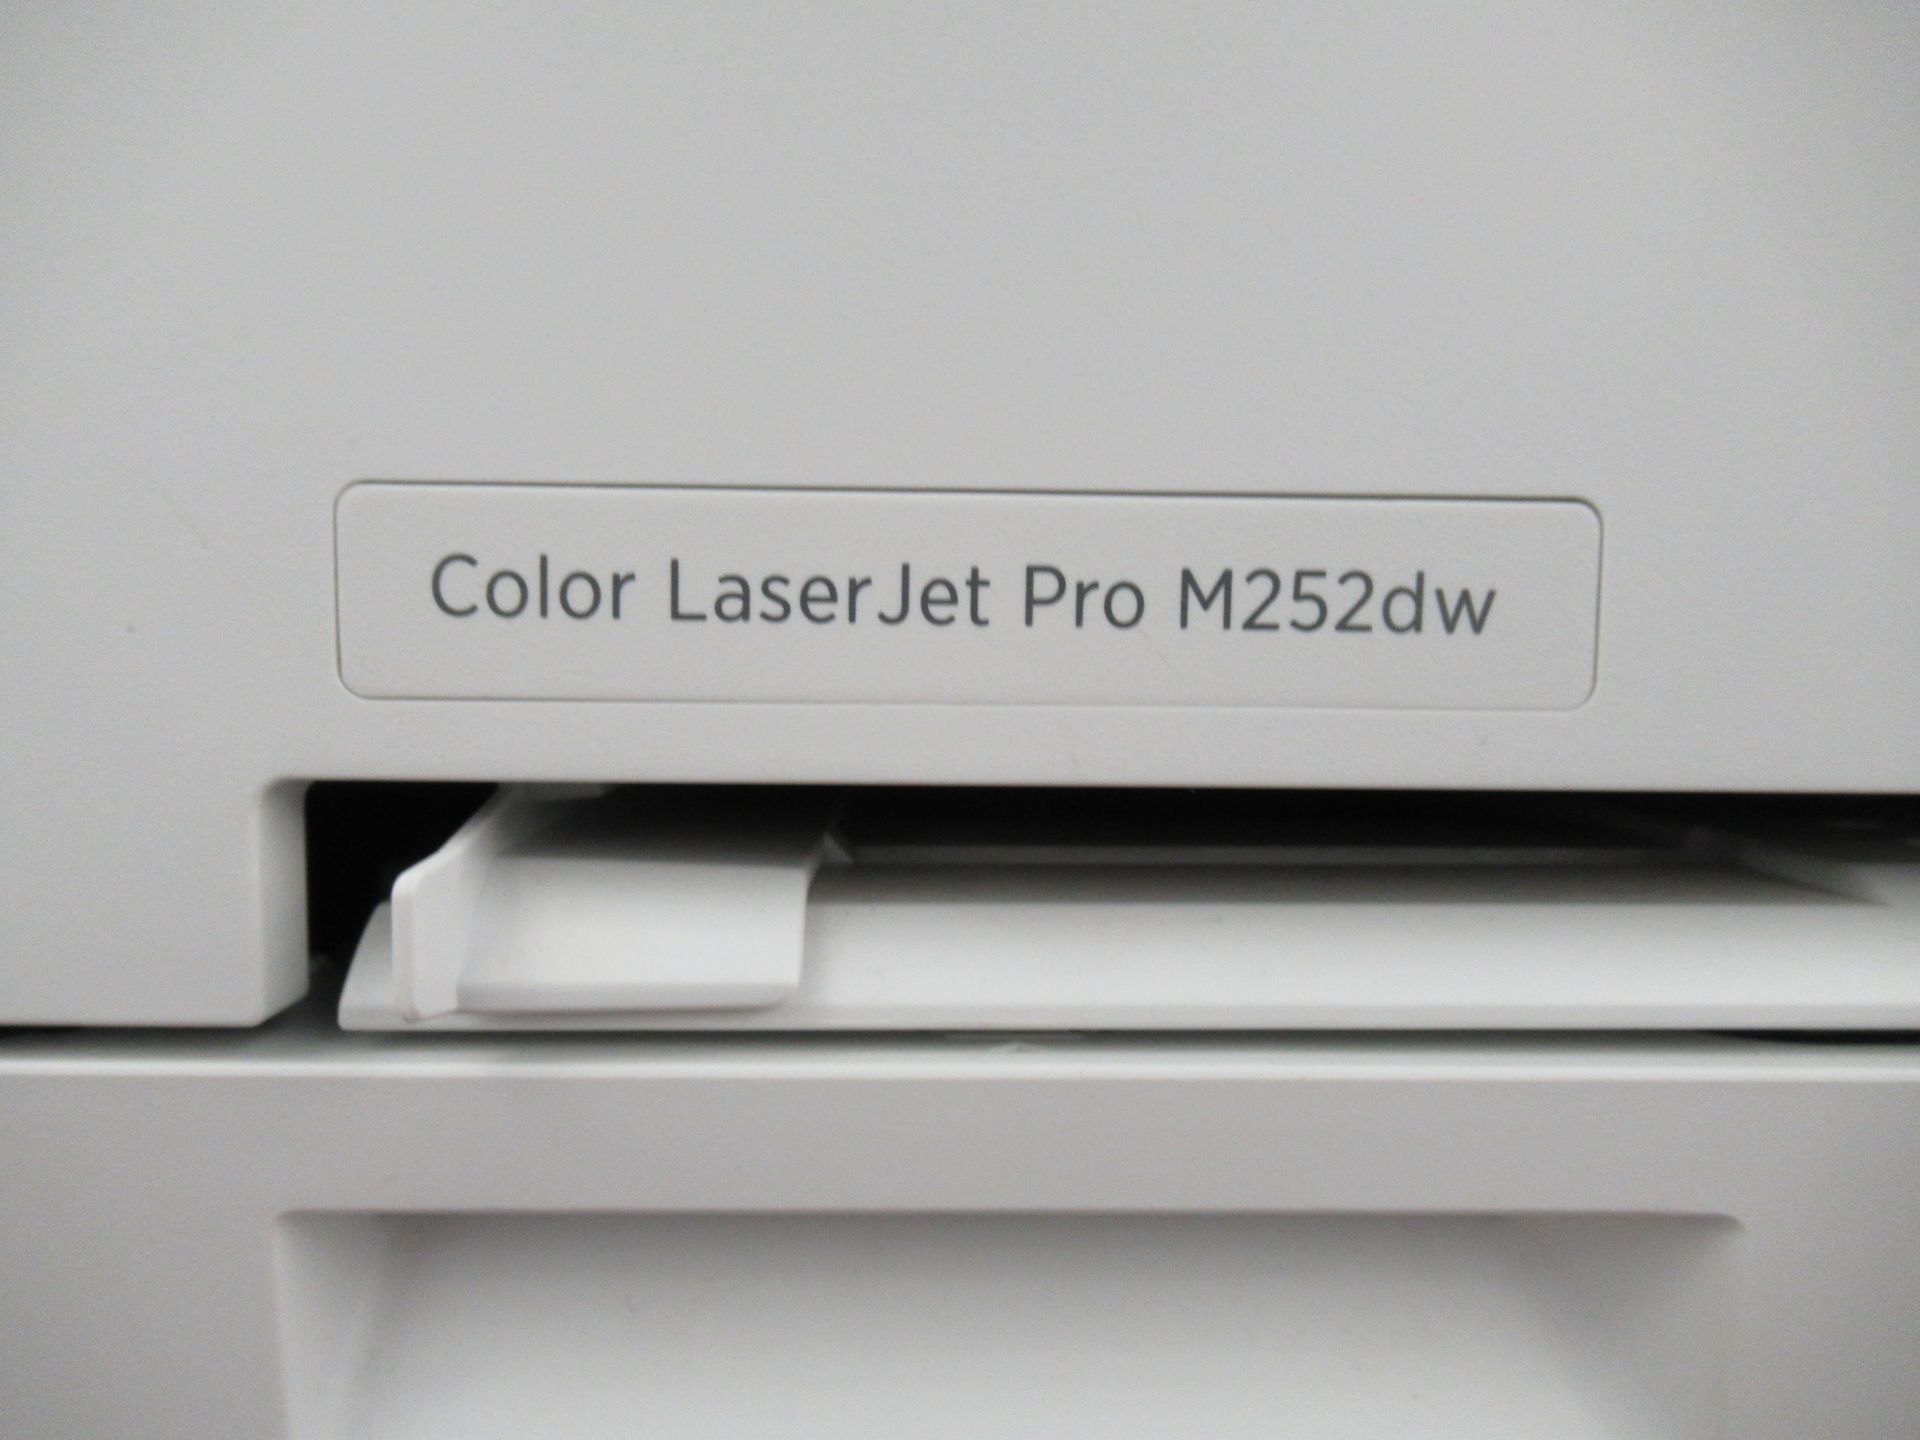 HP COLOUR LASERJET PRO, M252DW PRINTER/COPIER (REUTER) - Image 2 of 4